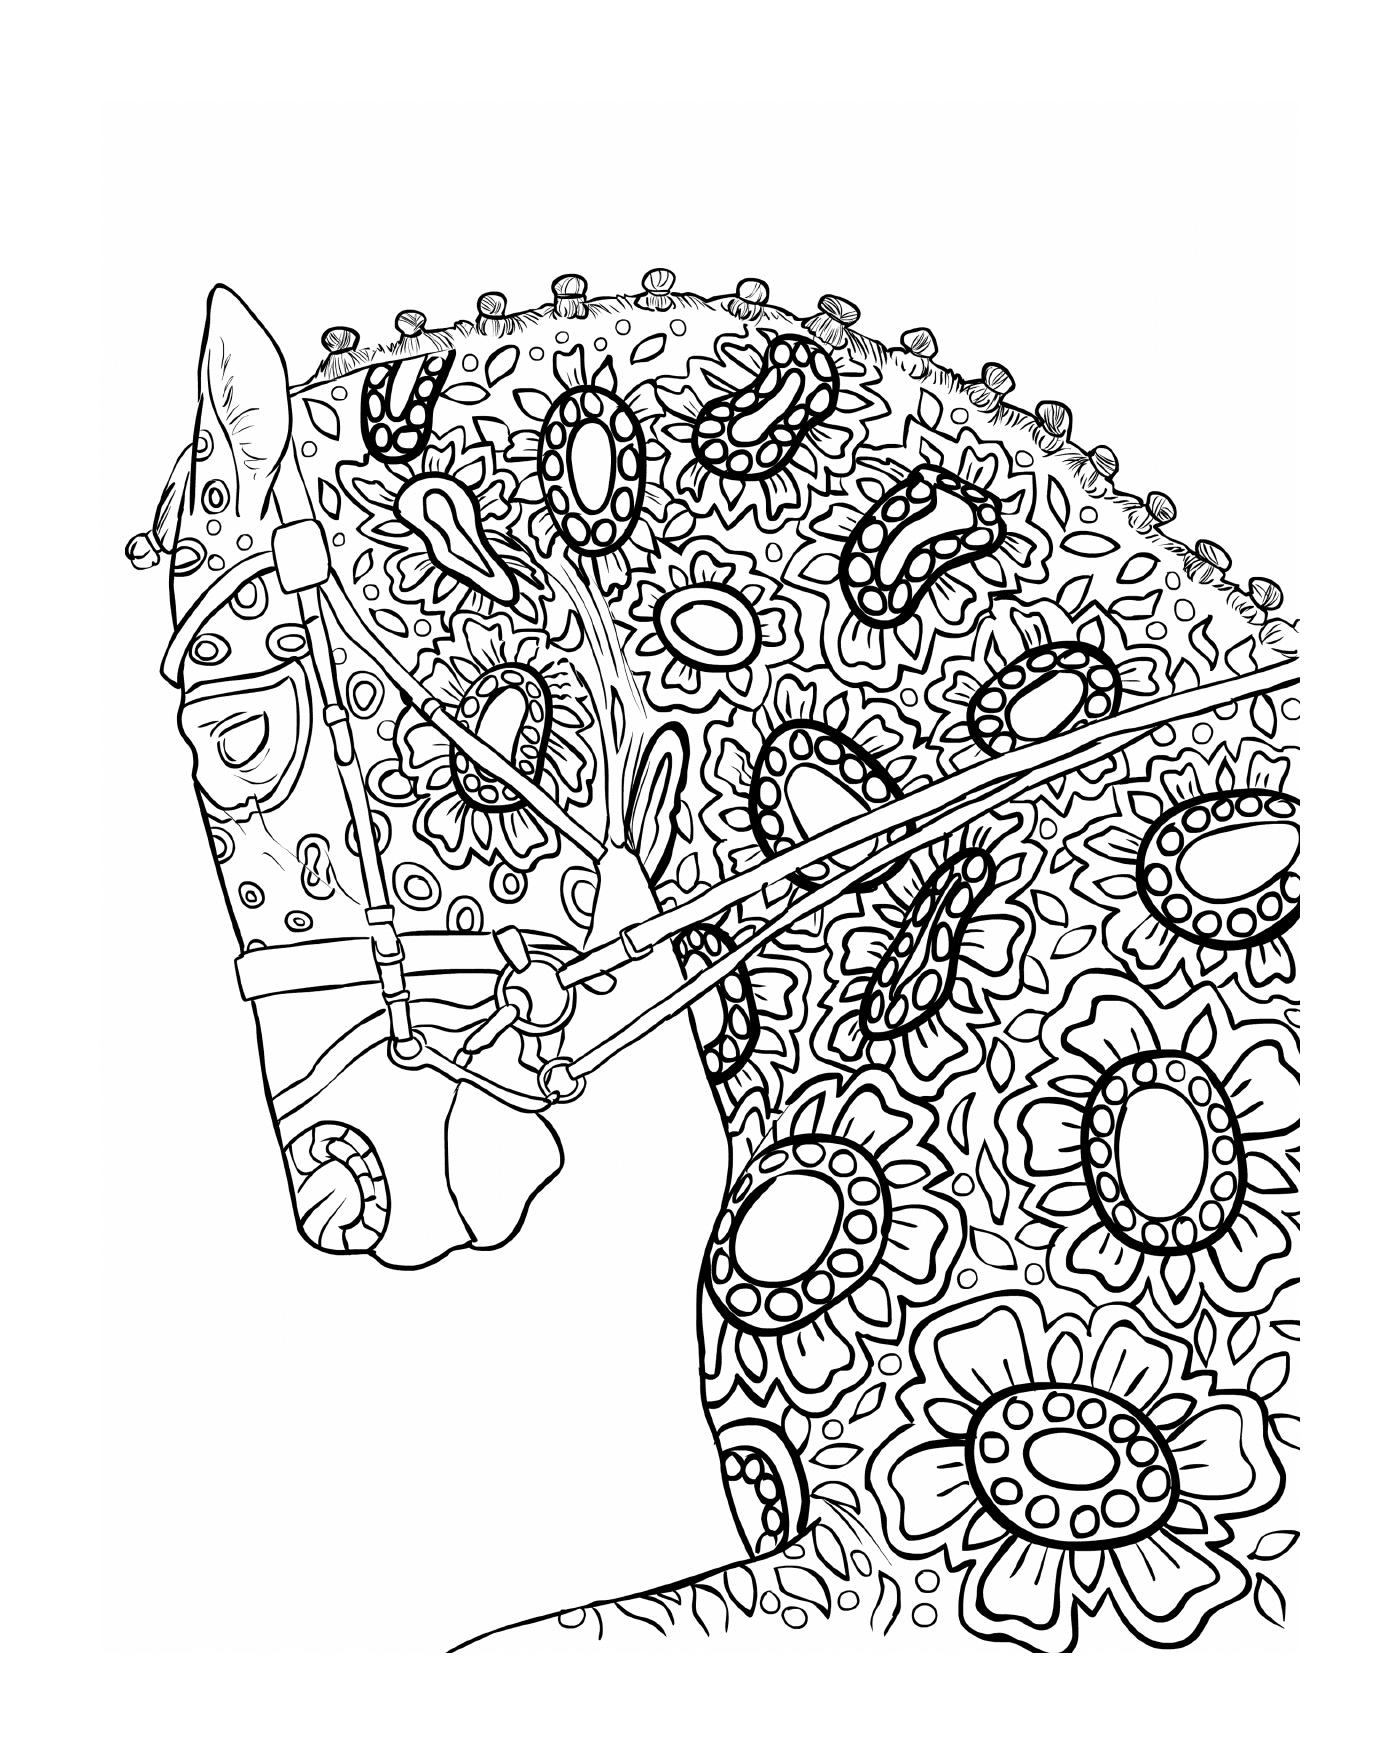  La testa di un cavallo con motivi floreali 